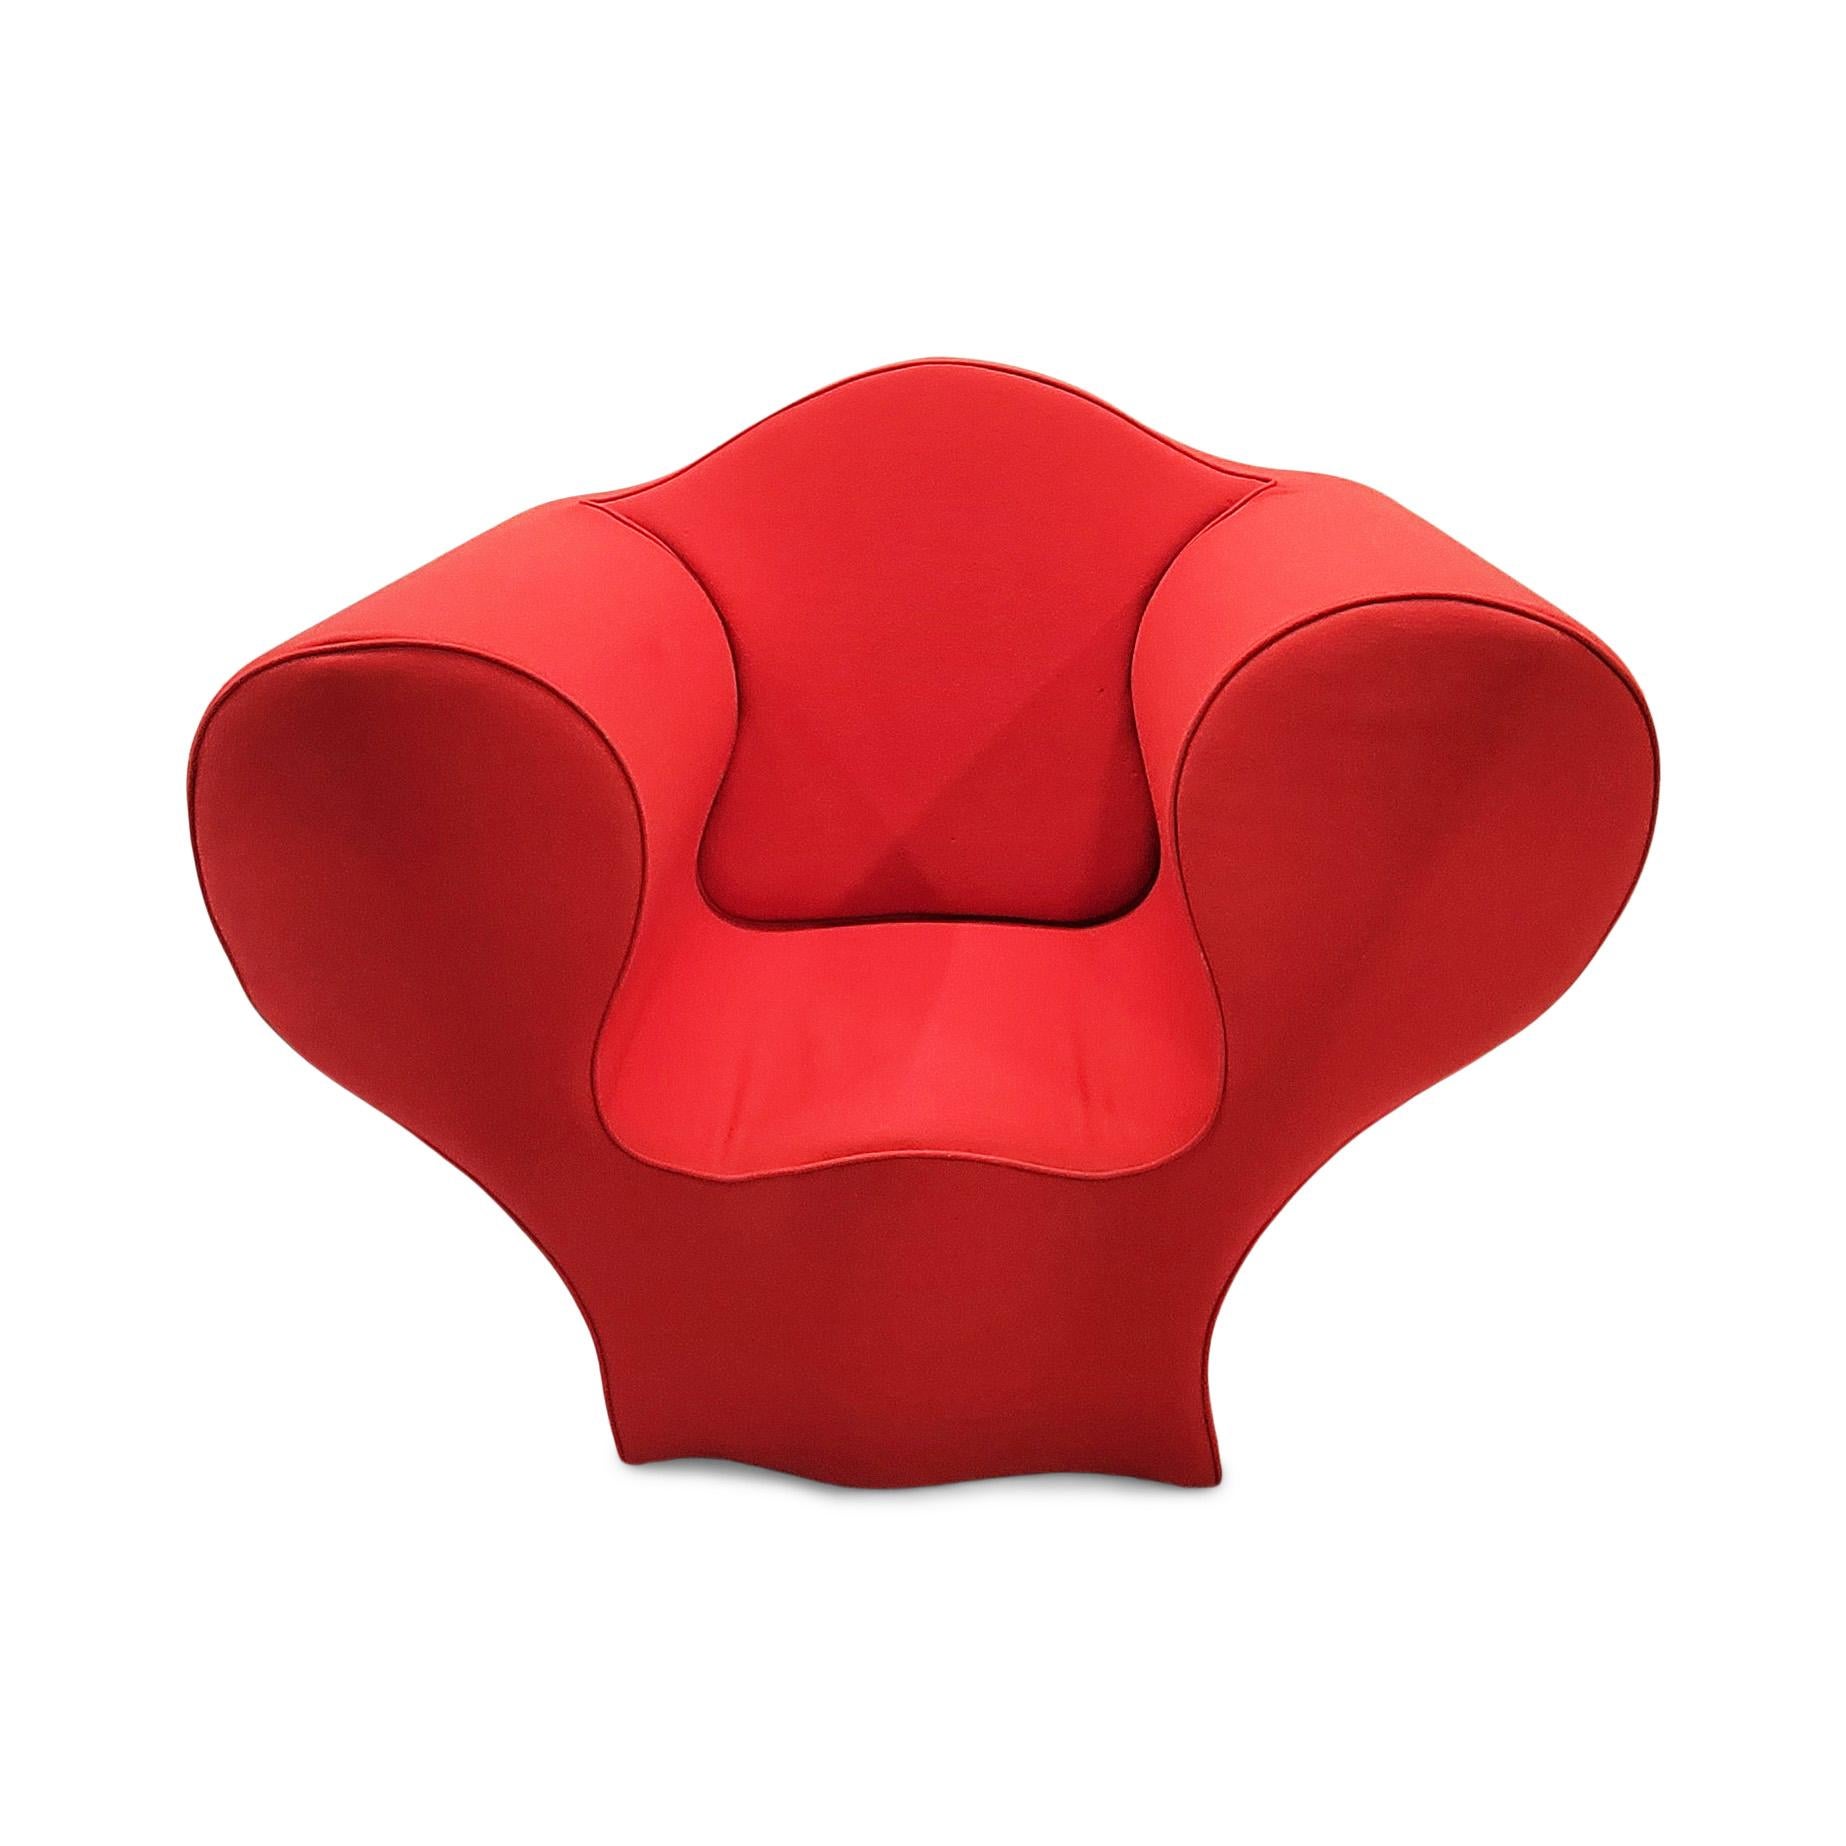 ron arad chair